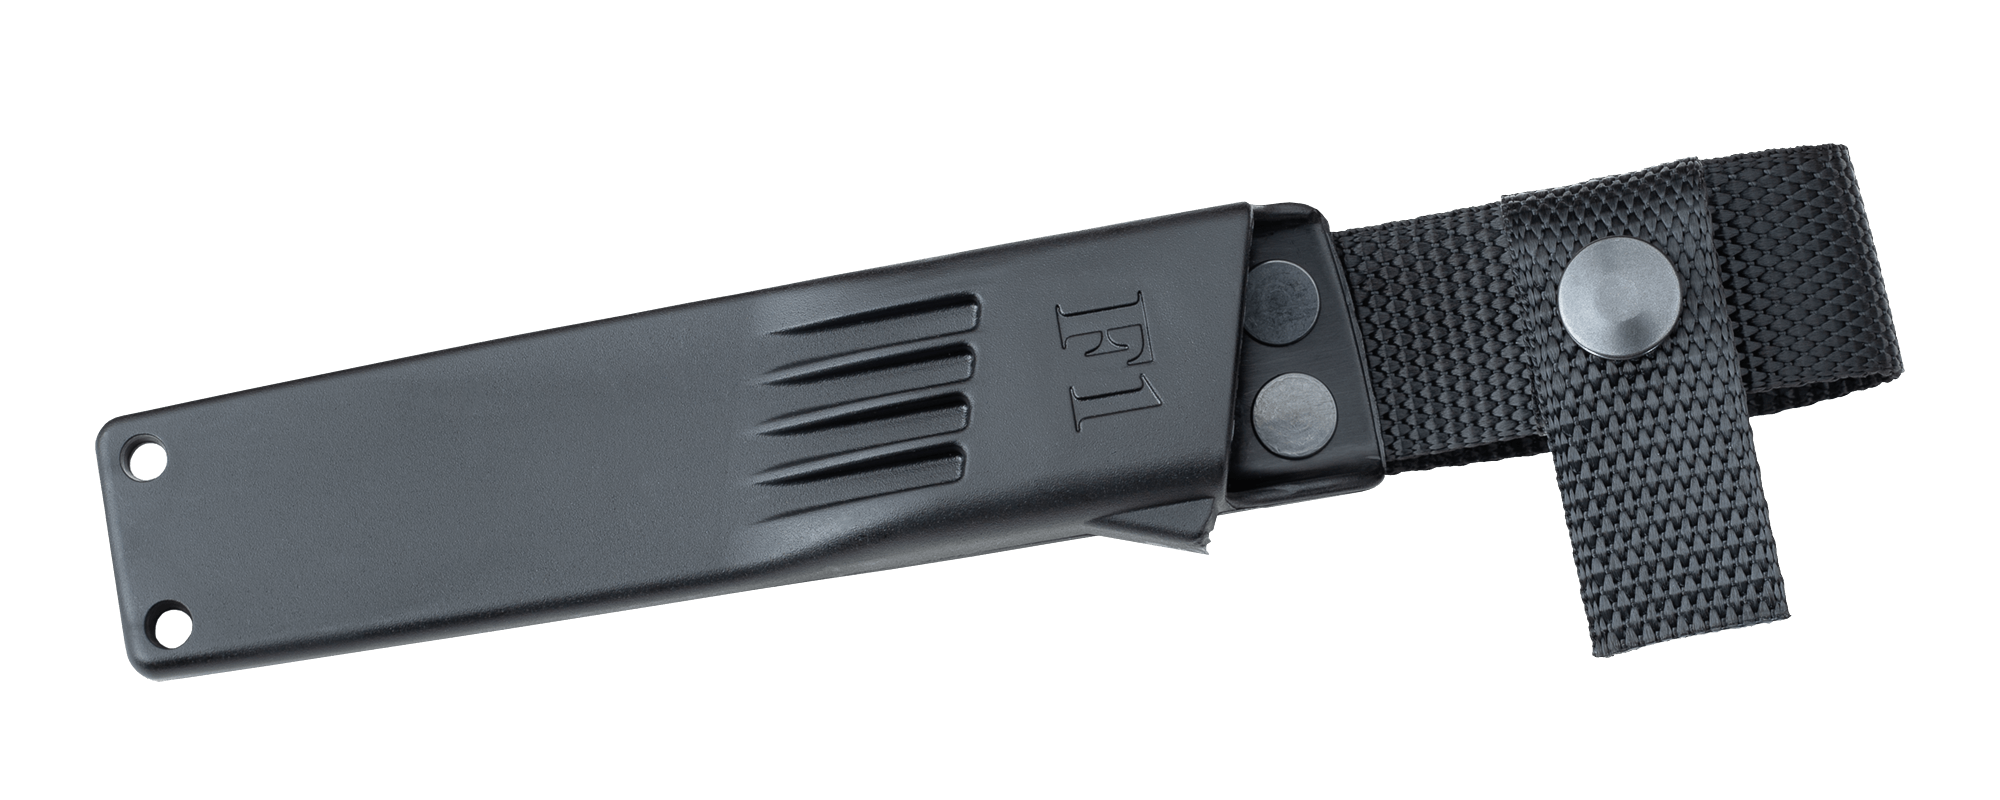 Fallkniven F1 Military Survival Knife – Laminated VG10 Steel | Fallkniven